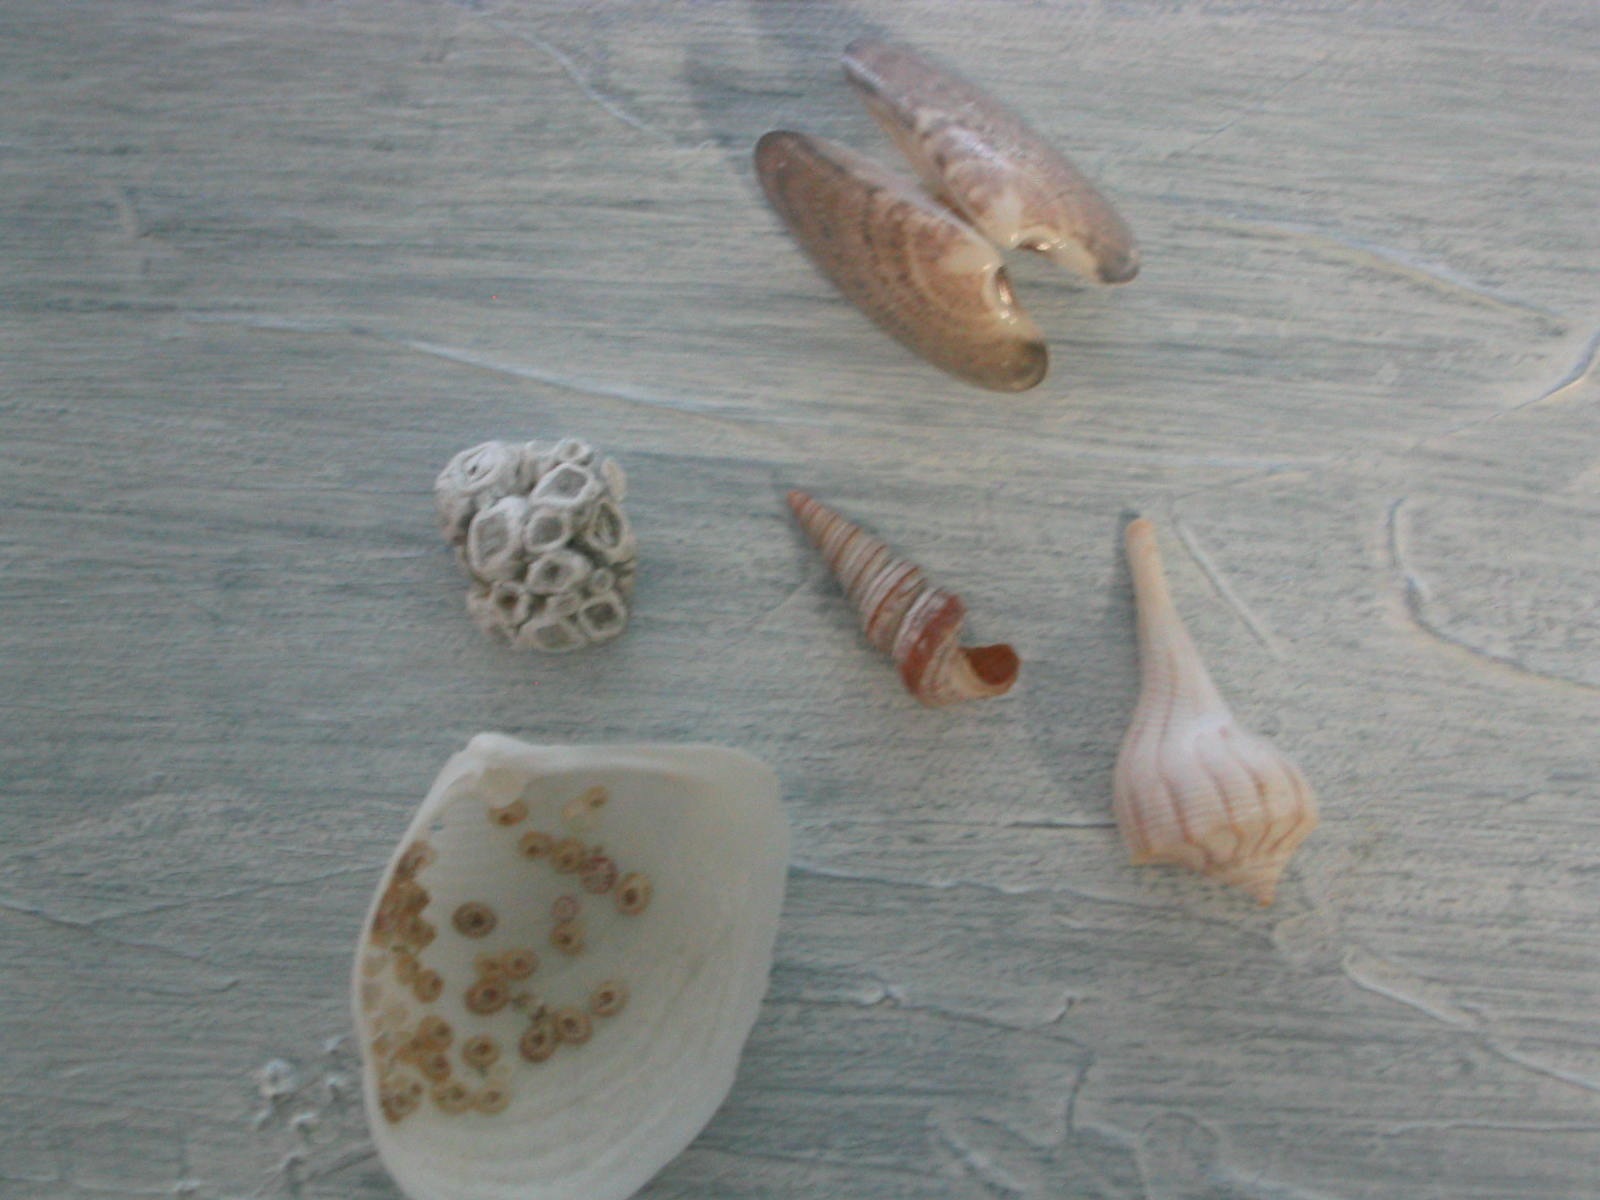 Shells on Anna Maria Island beaches